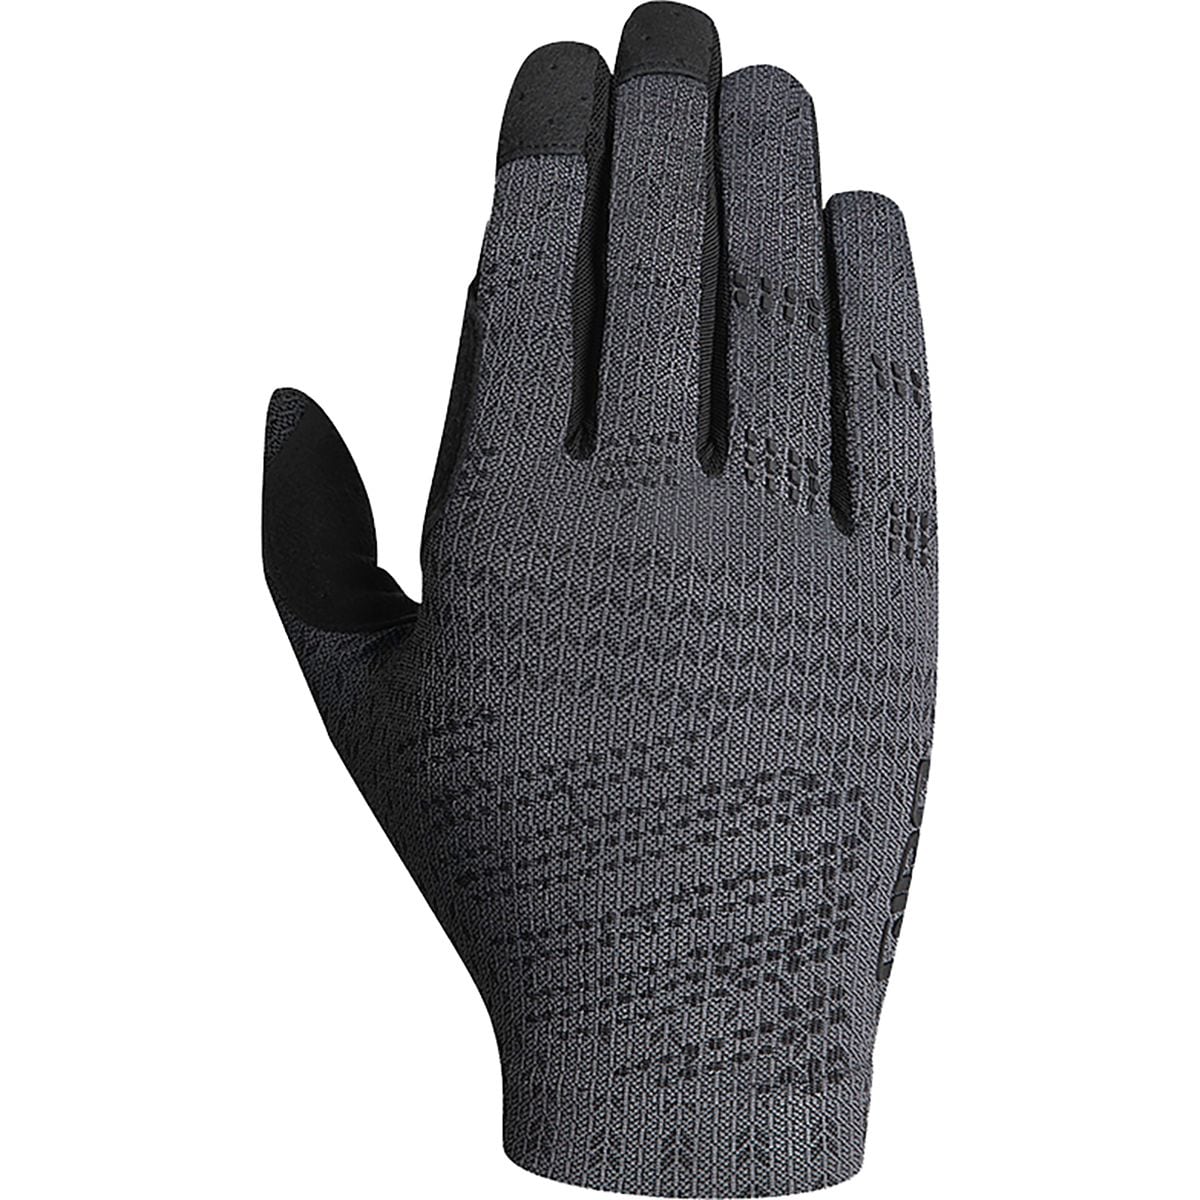 Giro Xnetic Trail Glove - Men's Coal, S